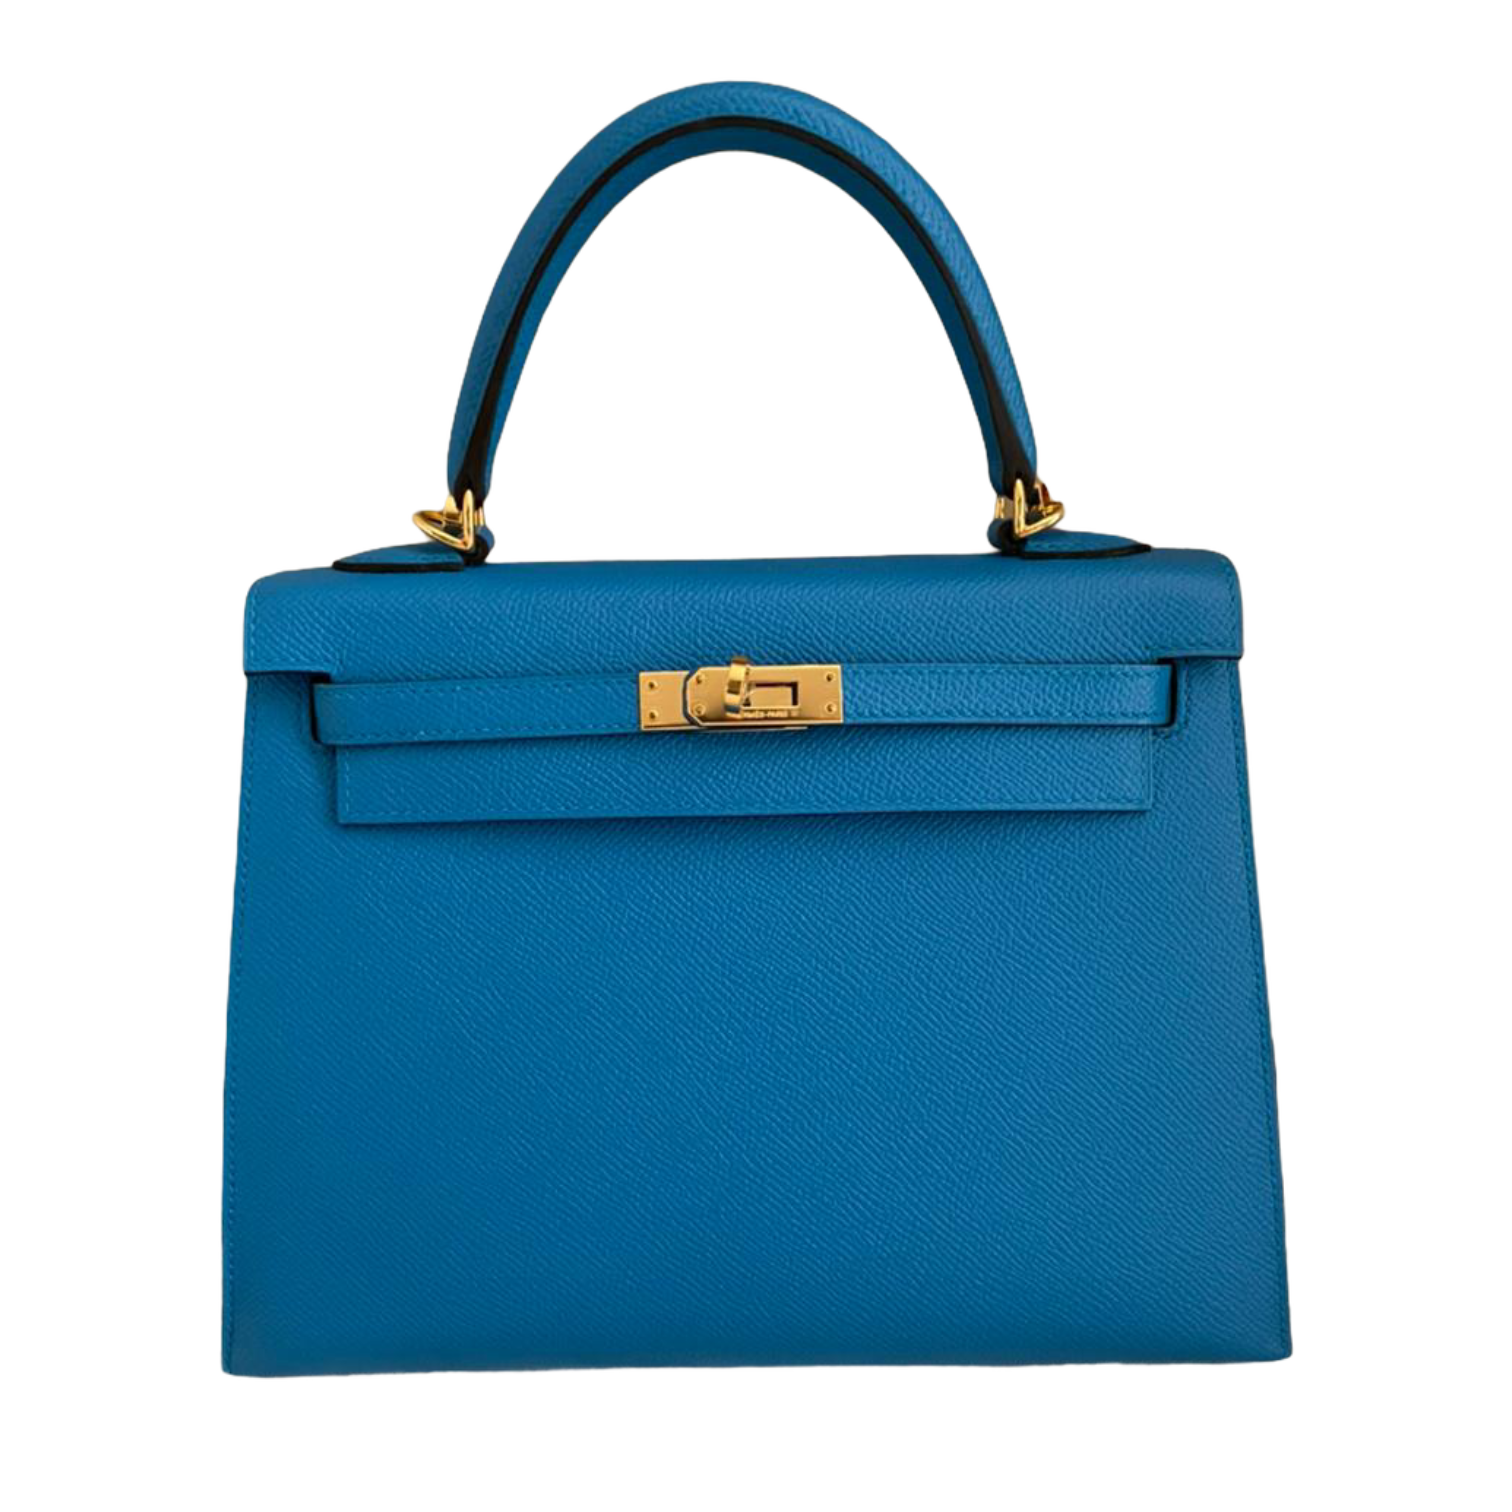 Buy Hermes Pre Owned Handbag - Hermes Kelly 25 Blue Zanzibar Epsom ...